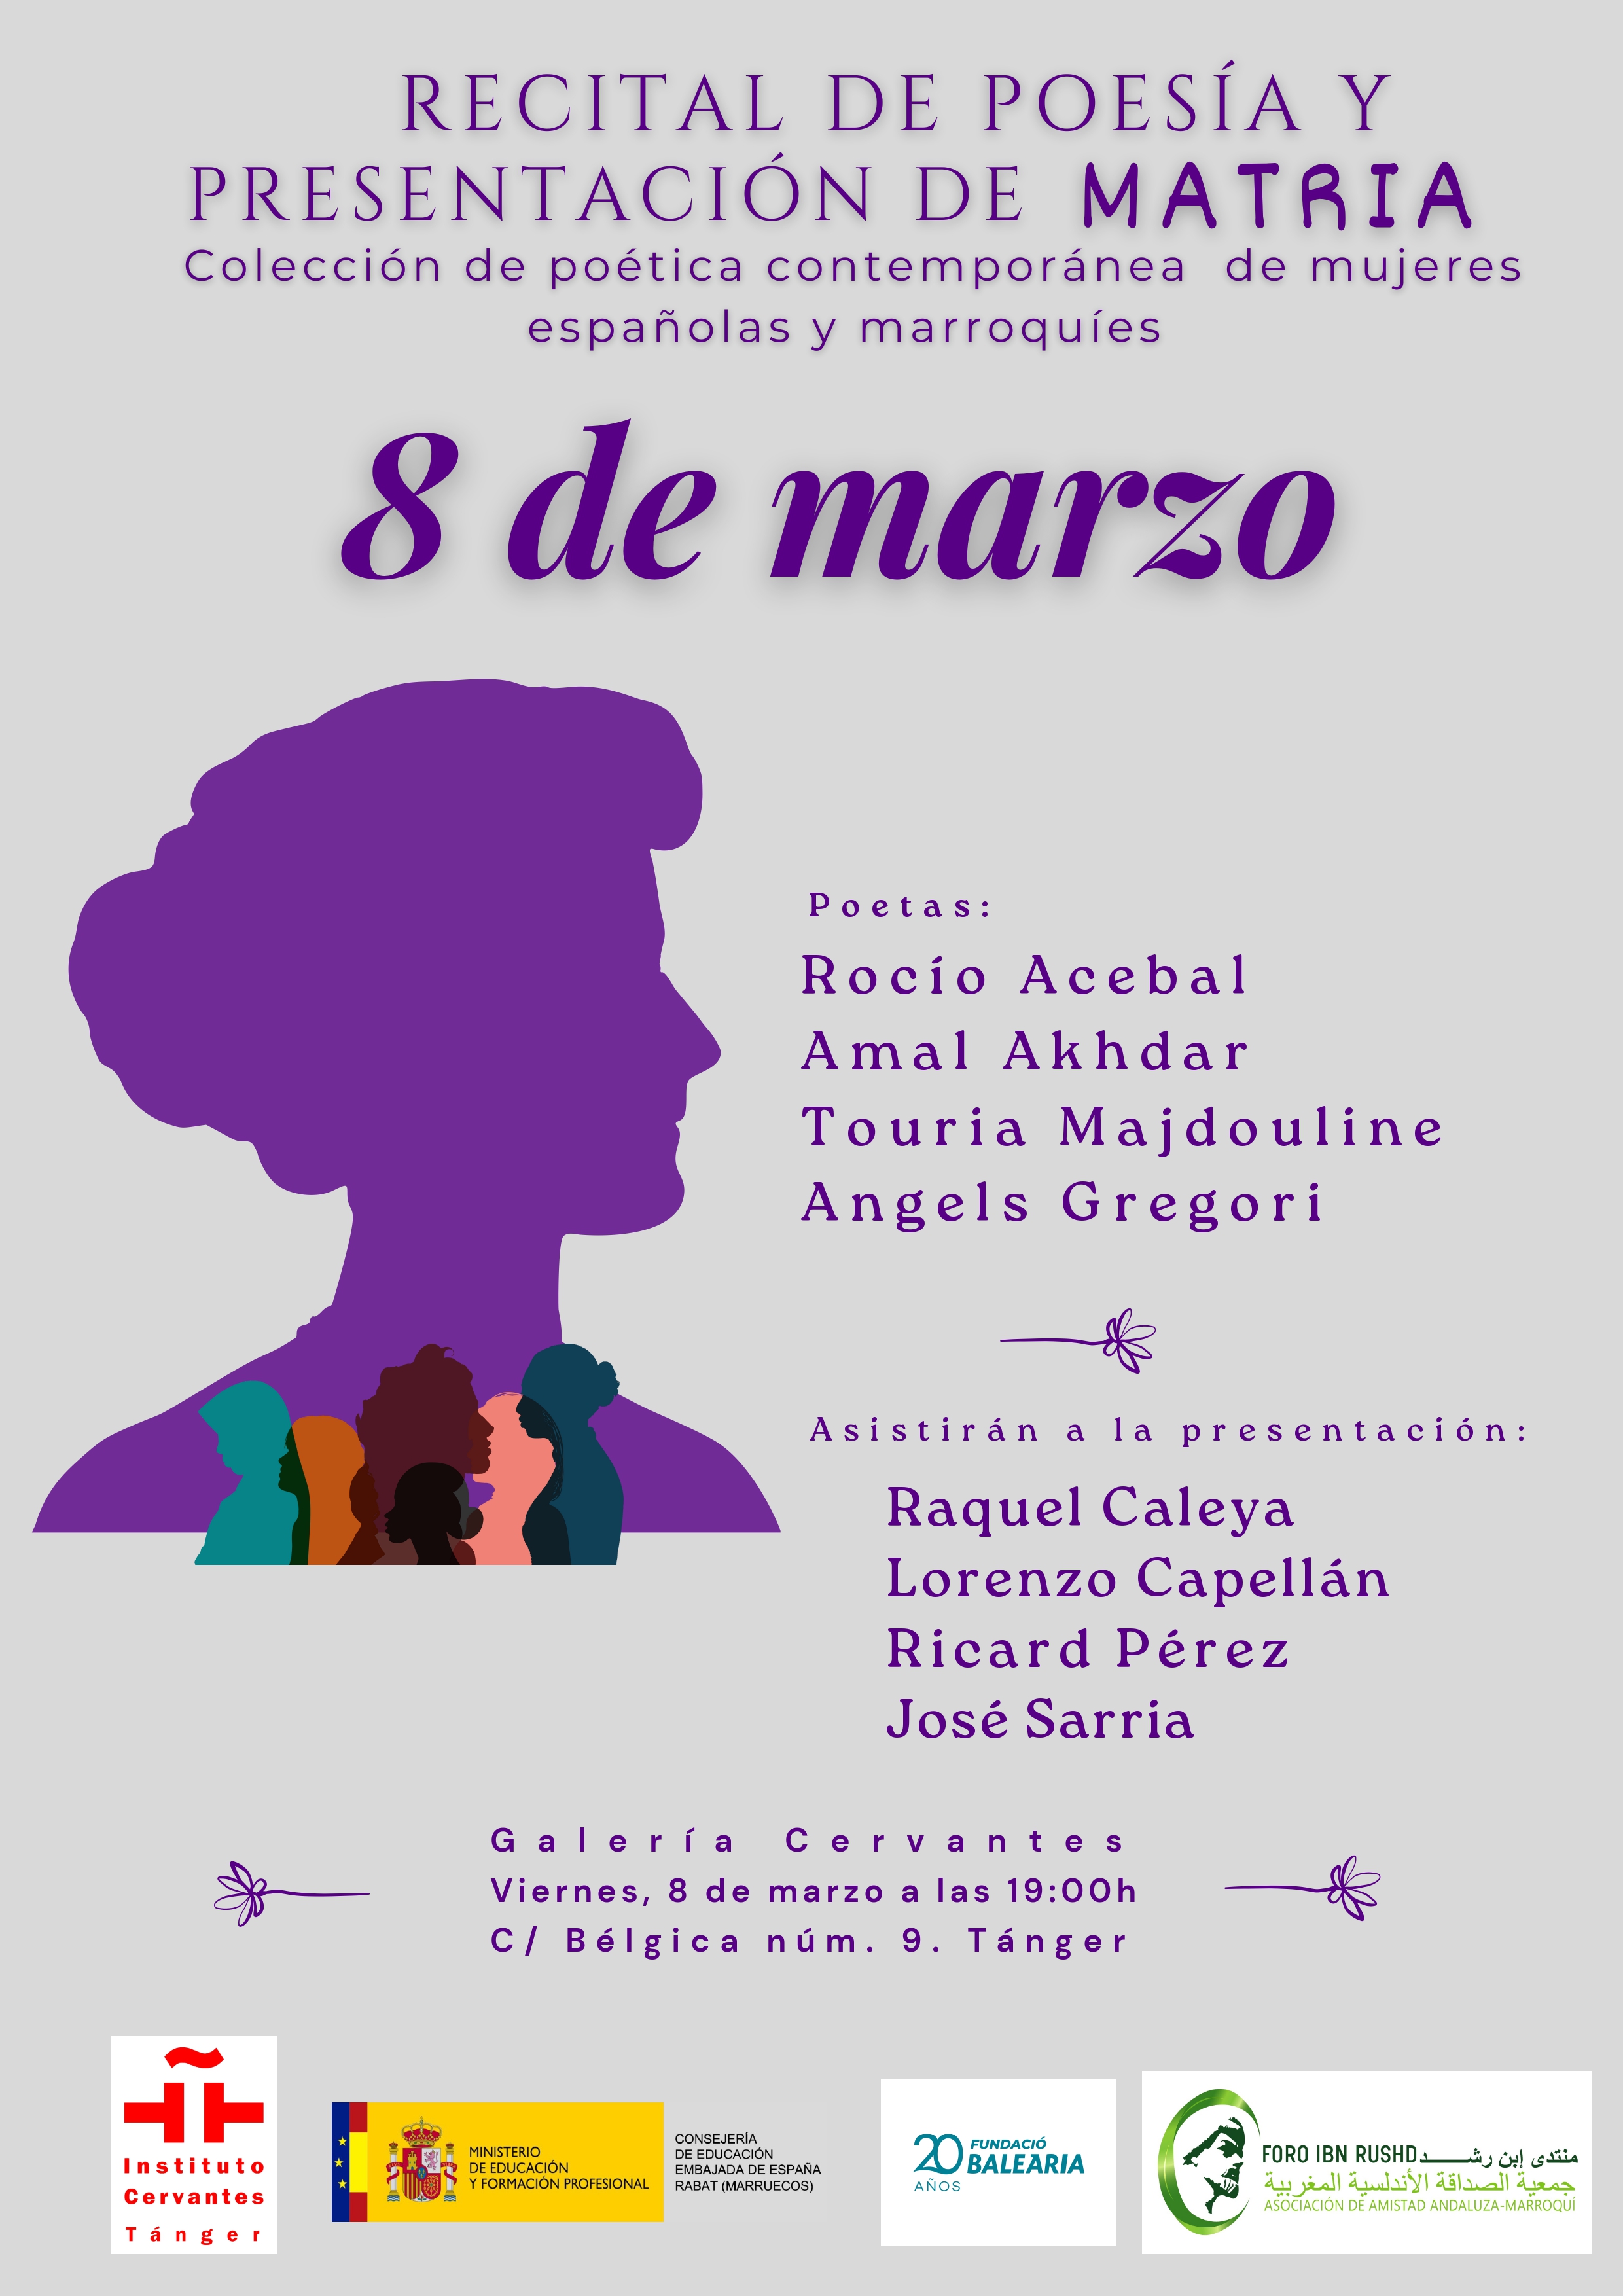 Recital de poesía y presentación de Matria: colección poética contemporánea de mujeres españolas y marroquíes